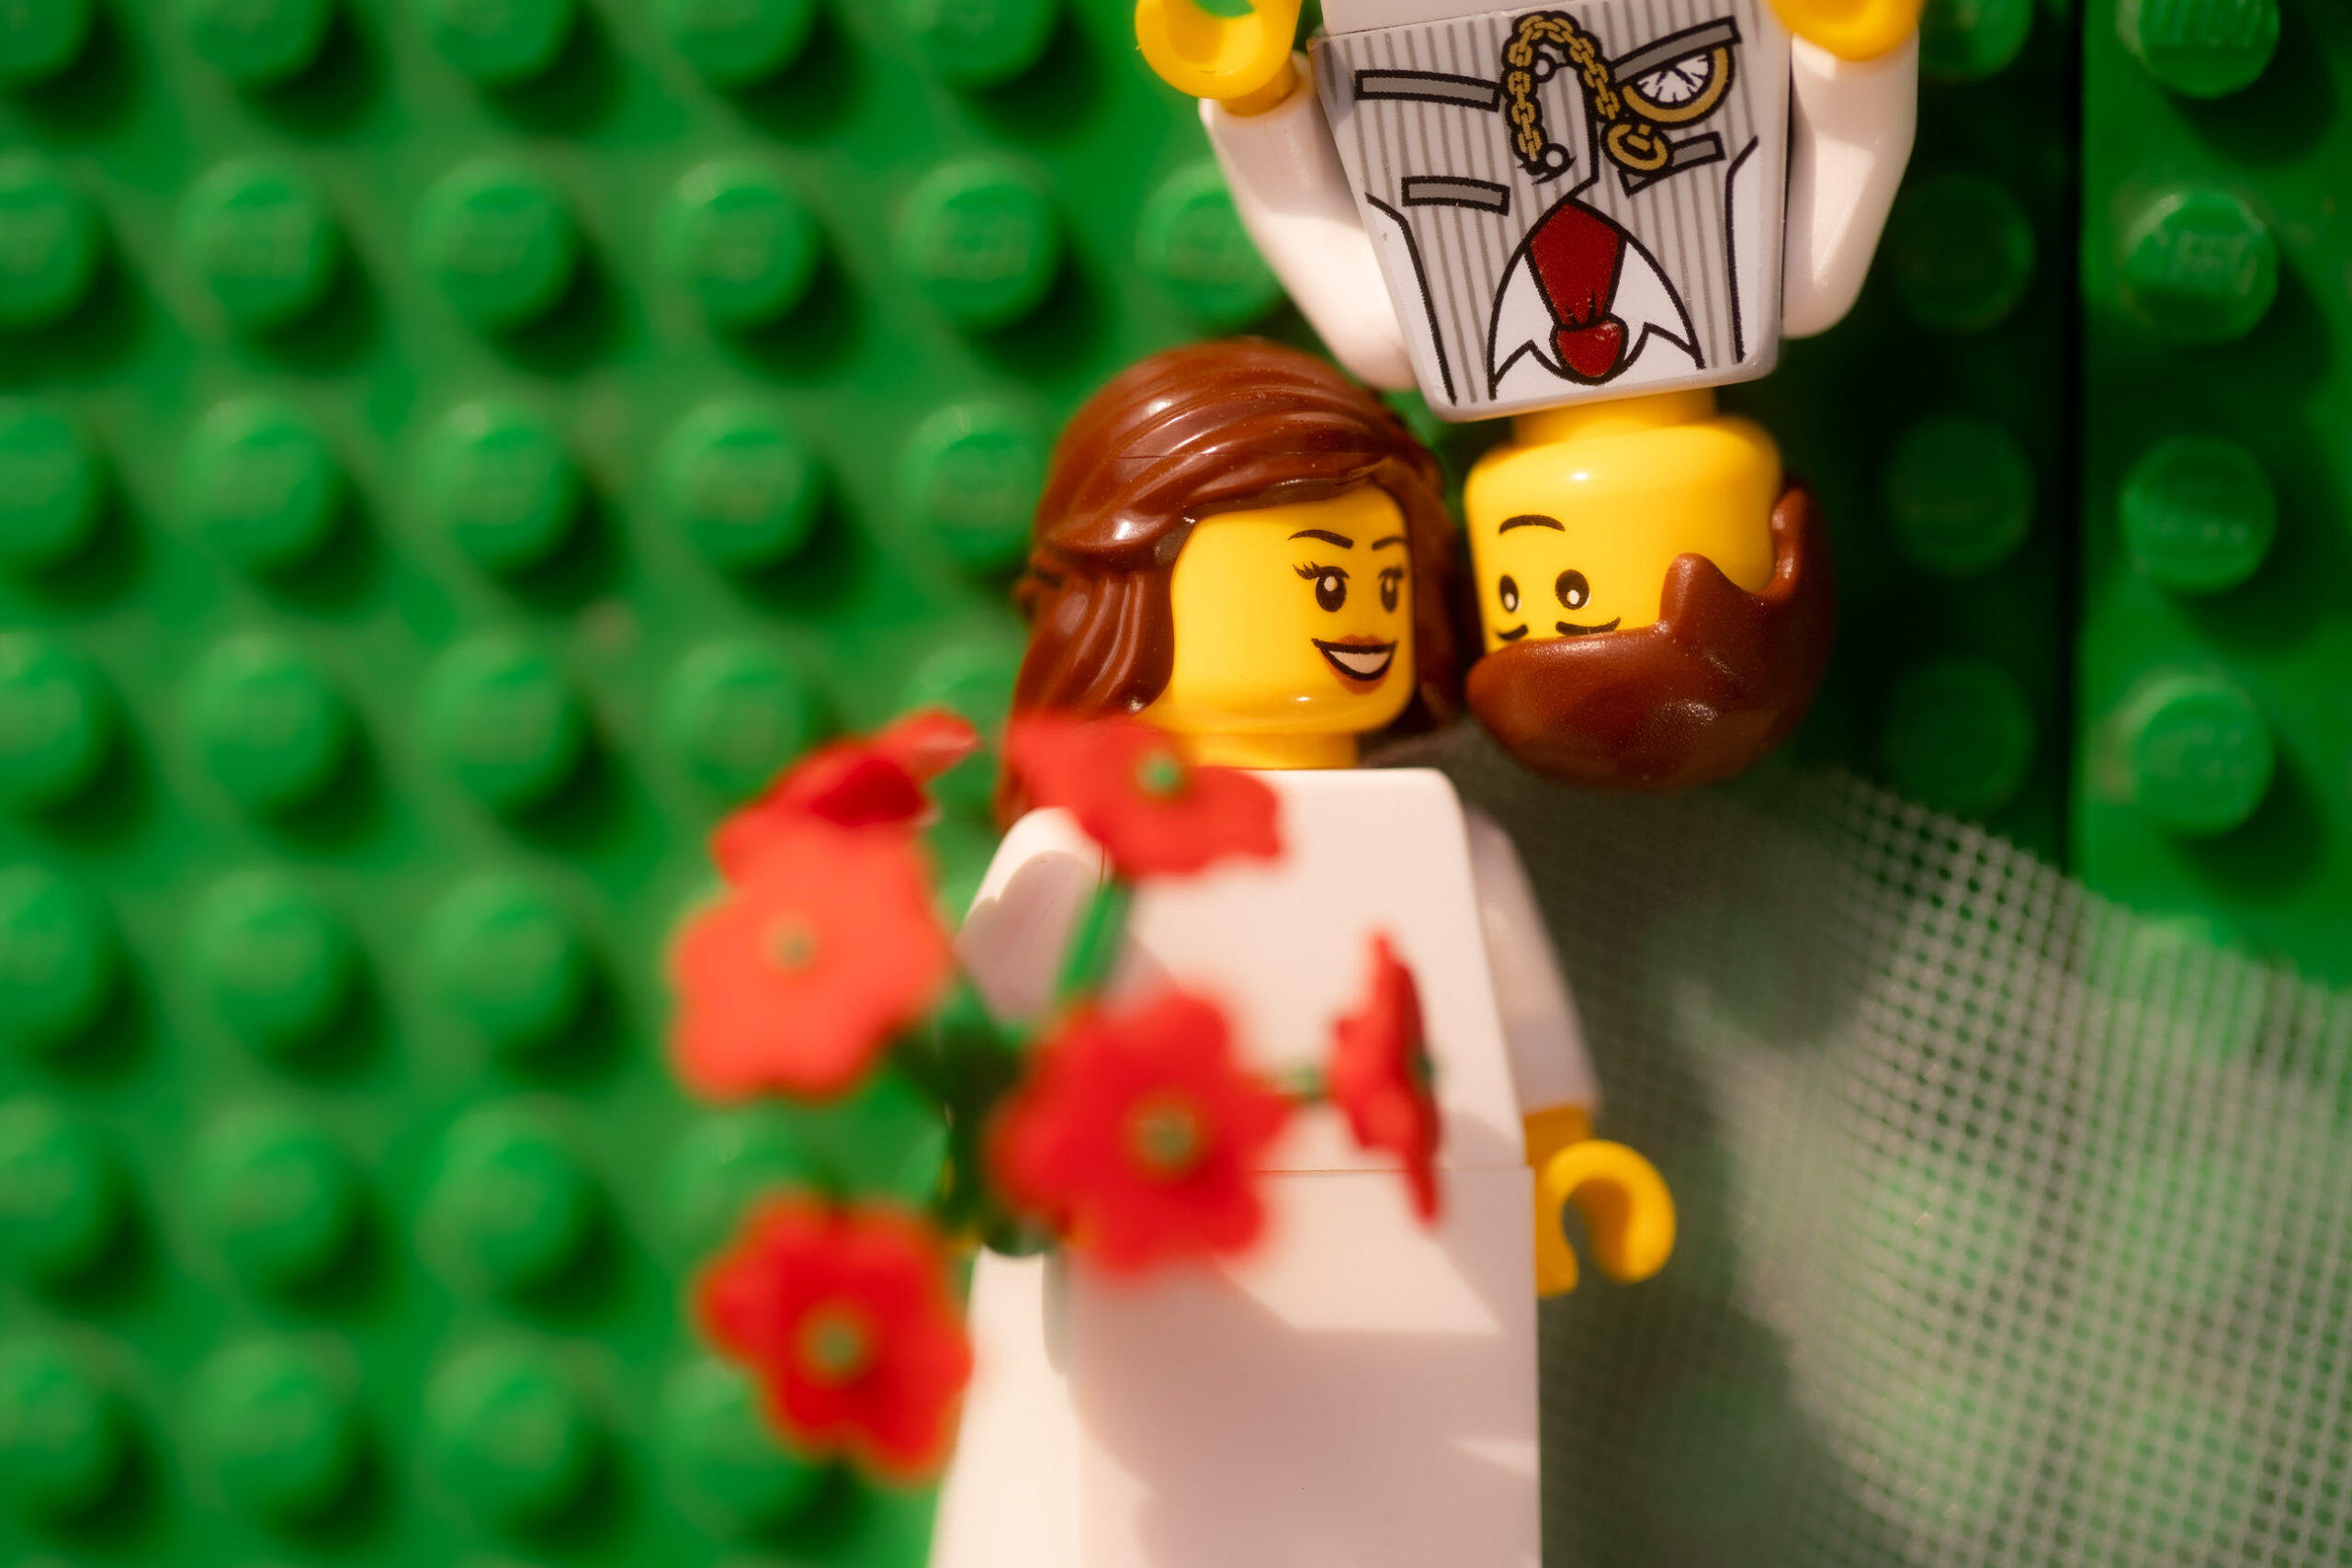 【另類婚紗相】攝影師「LEGO婚照」網上爆紅：在家打造求婚、行禮、宣誓、晚宴每一個